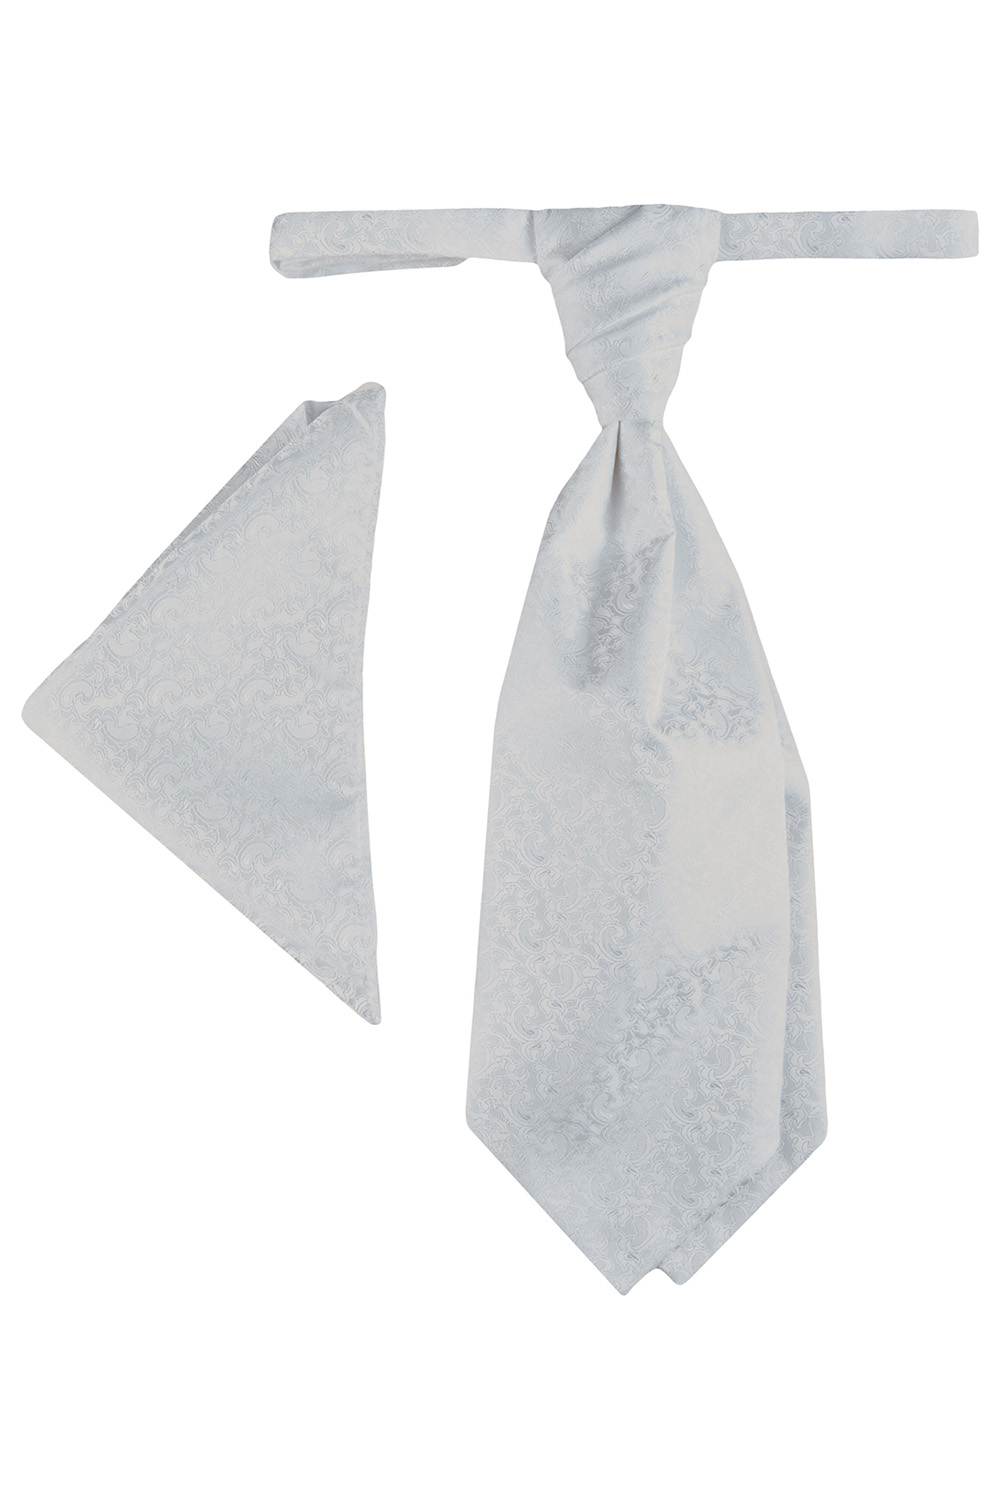 WILVORST francia nyakkendő 407207-10 Modell 0612